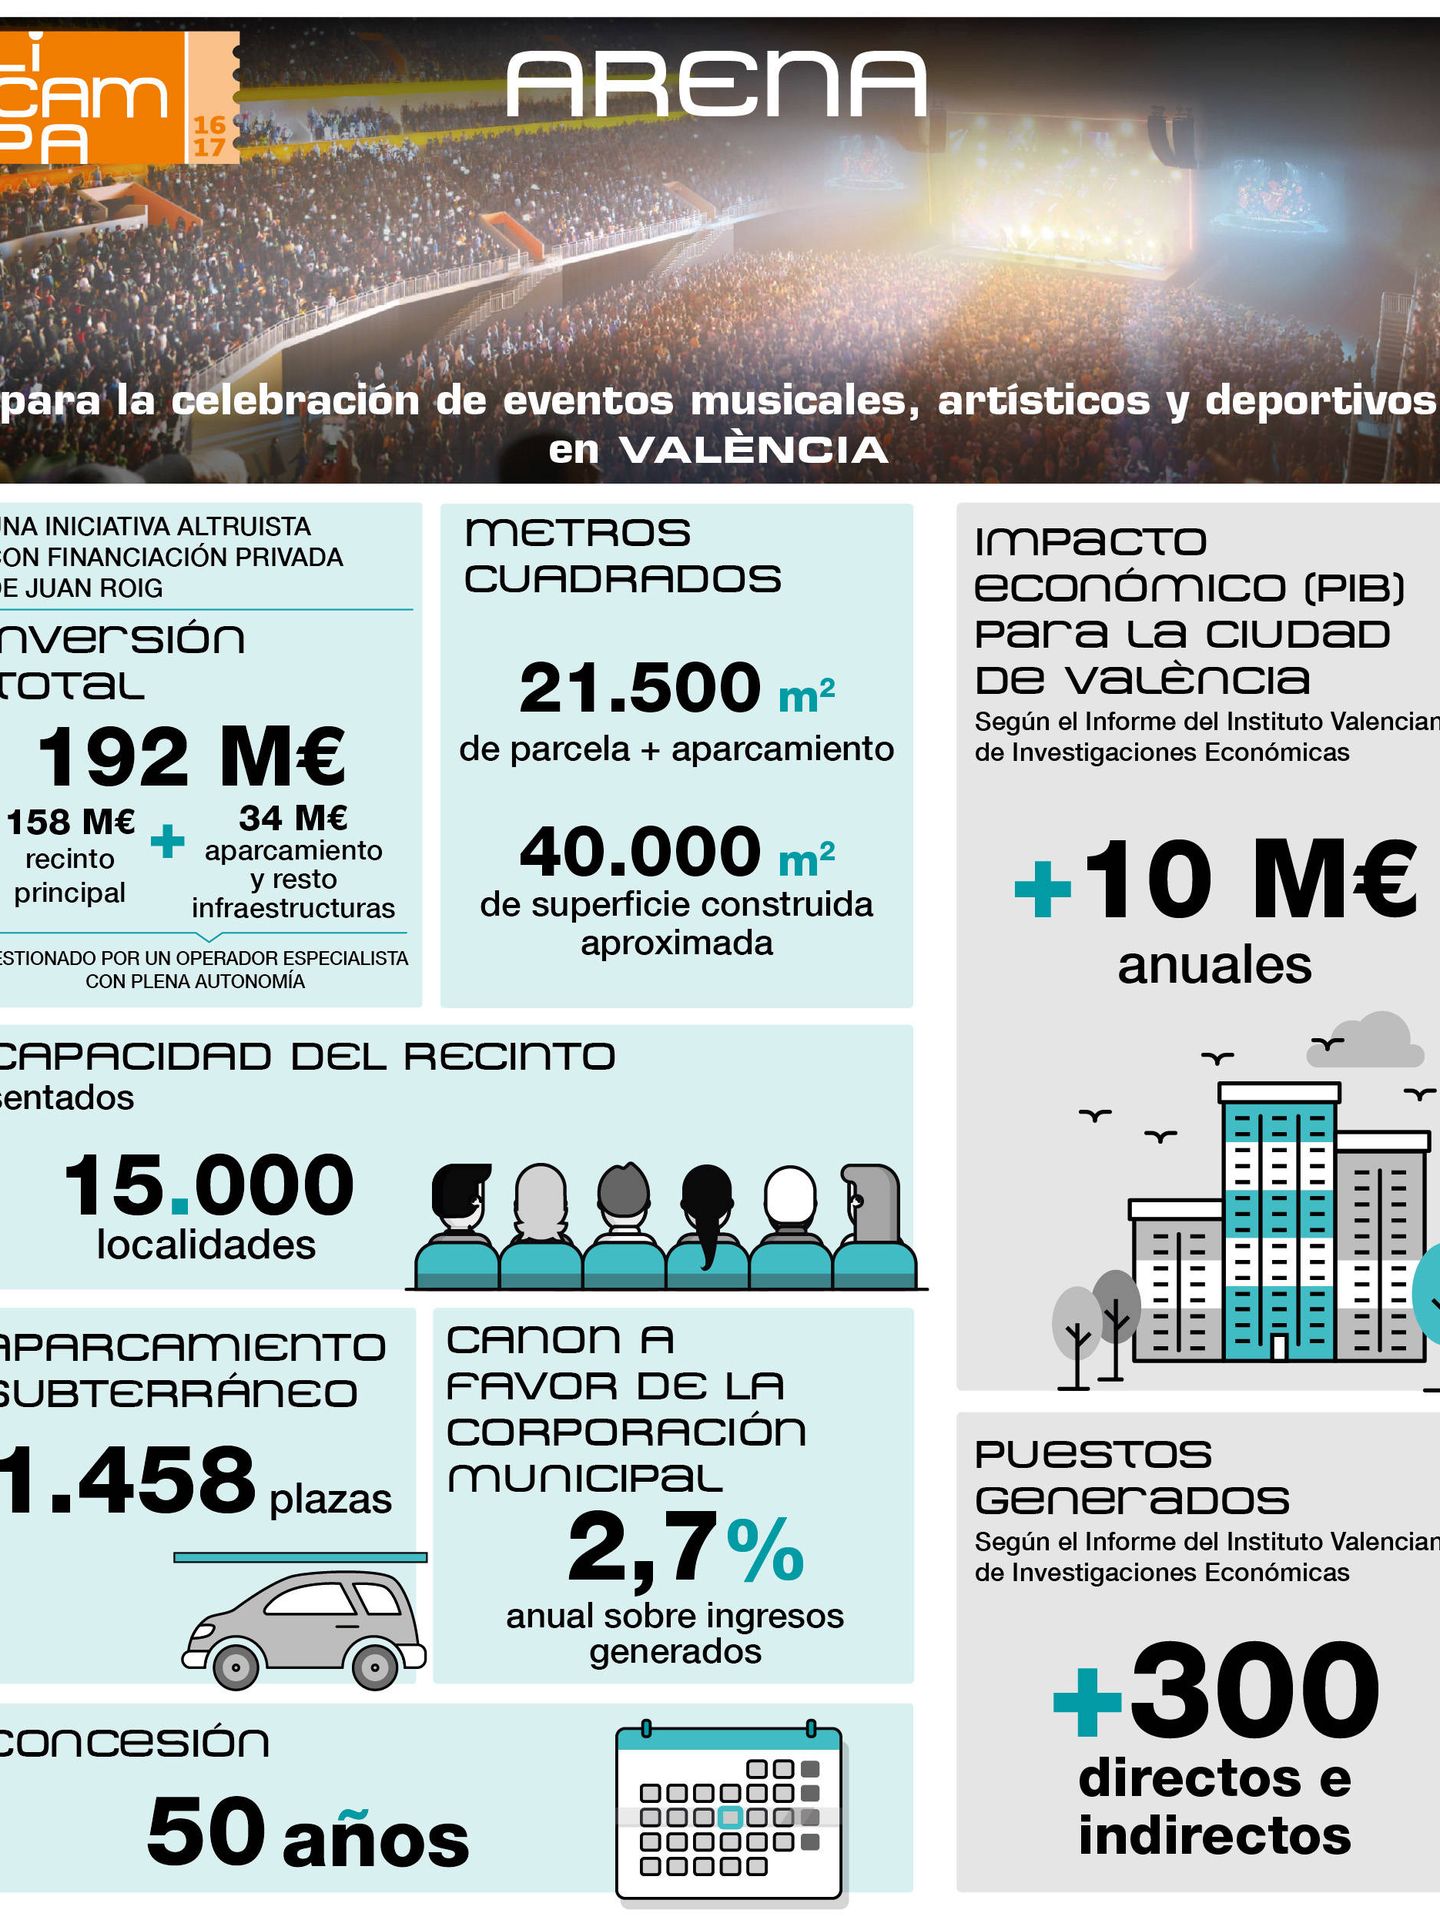 Las cifras del proyecto Arena de la patrimonial Licampa 1617 para el Valencia Basket. 